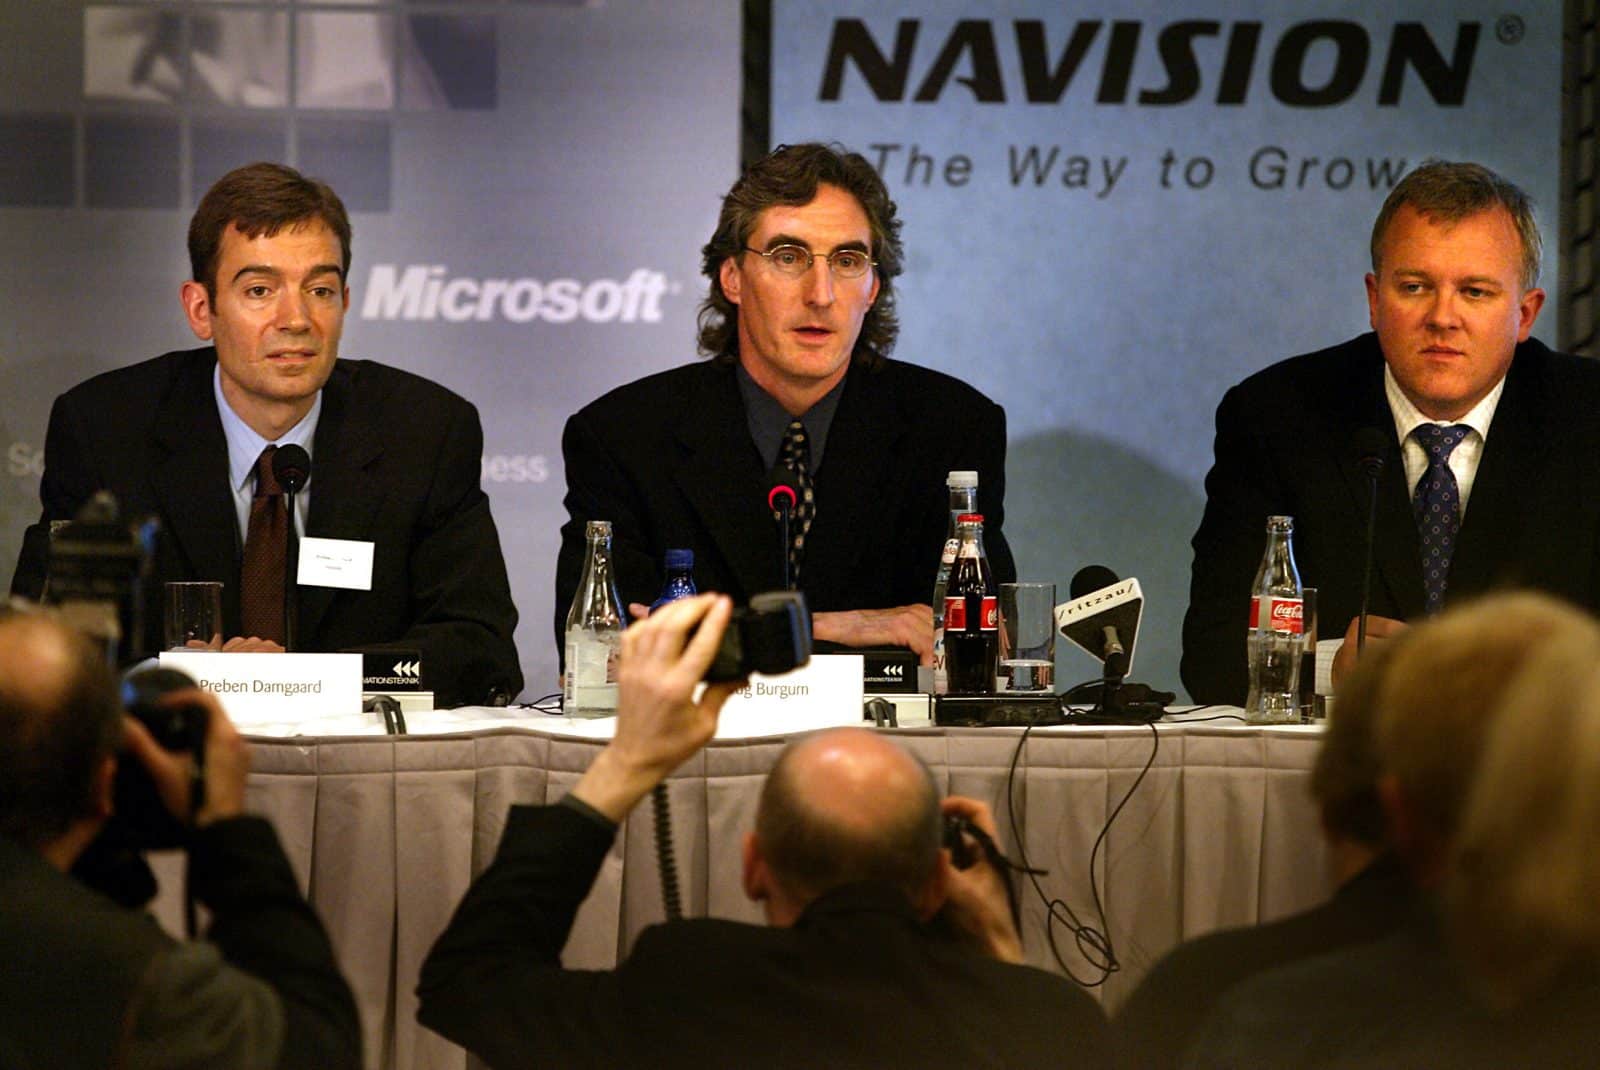 Doug Burgum (im), Microsoft senior vice president, er flankeret af to af softwareselskabet Navisons hovedaktionaerer Preben Damgaard(tv) og Jesper Balser(th) på et pressemøde tirsdag maj 7, 2002 i København, hvor det blev meddelt, at Microsoft køber Navision.SE RITZAU (Foto: BJARKE ØRSTED/SCANPIX NORDFOTO 2002)